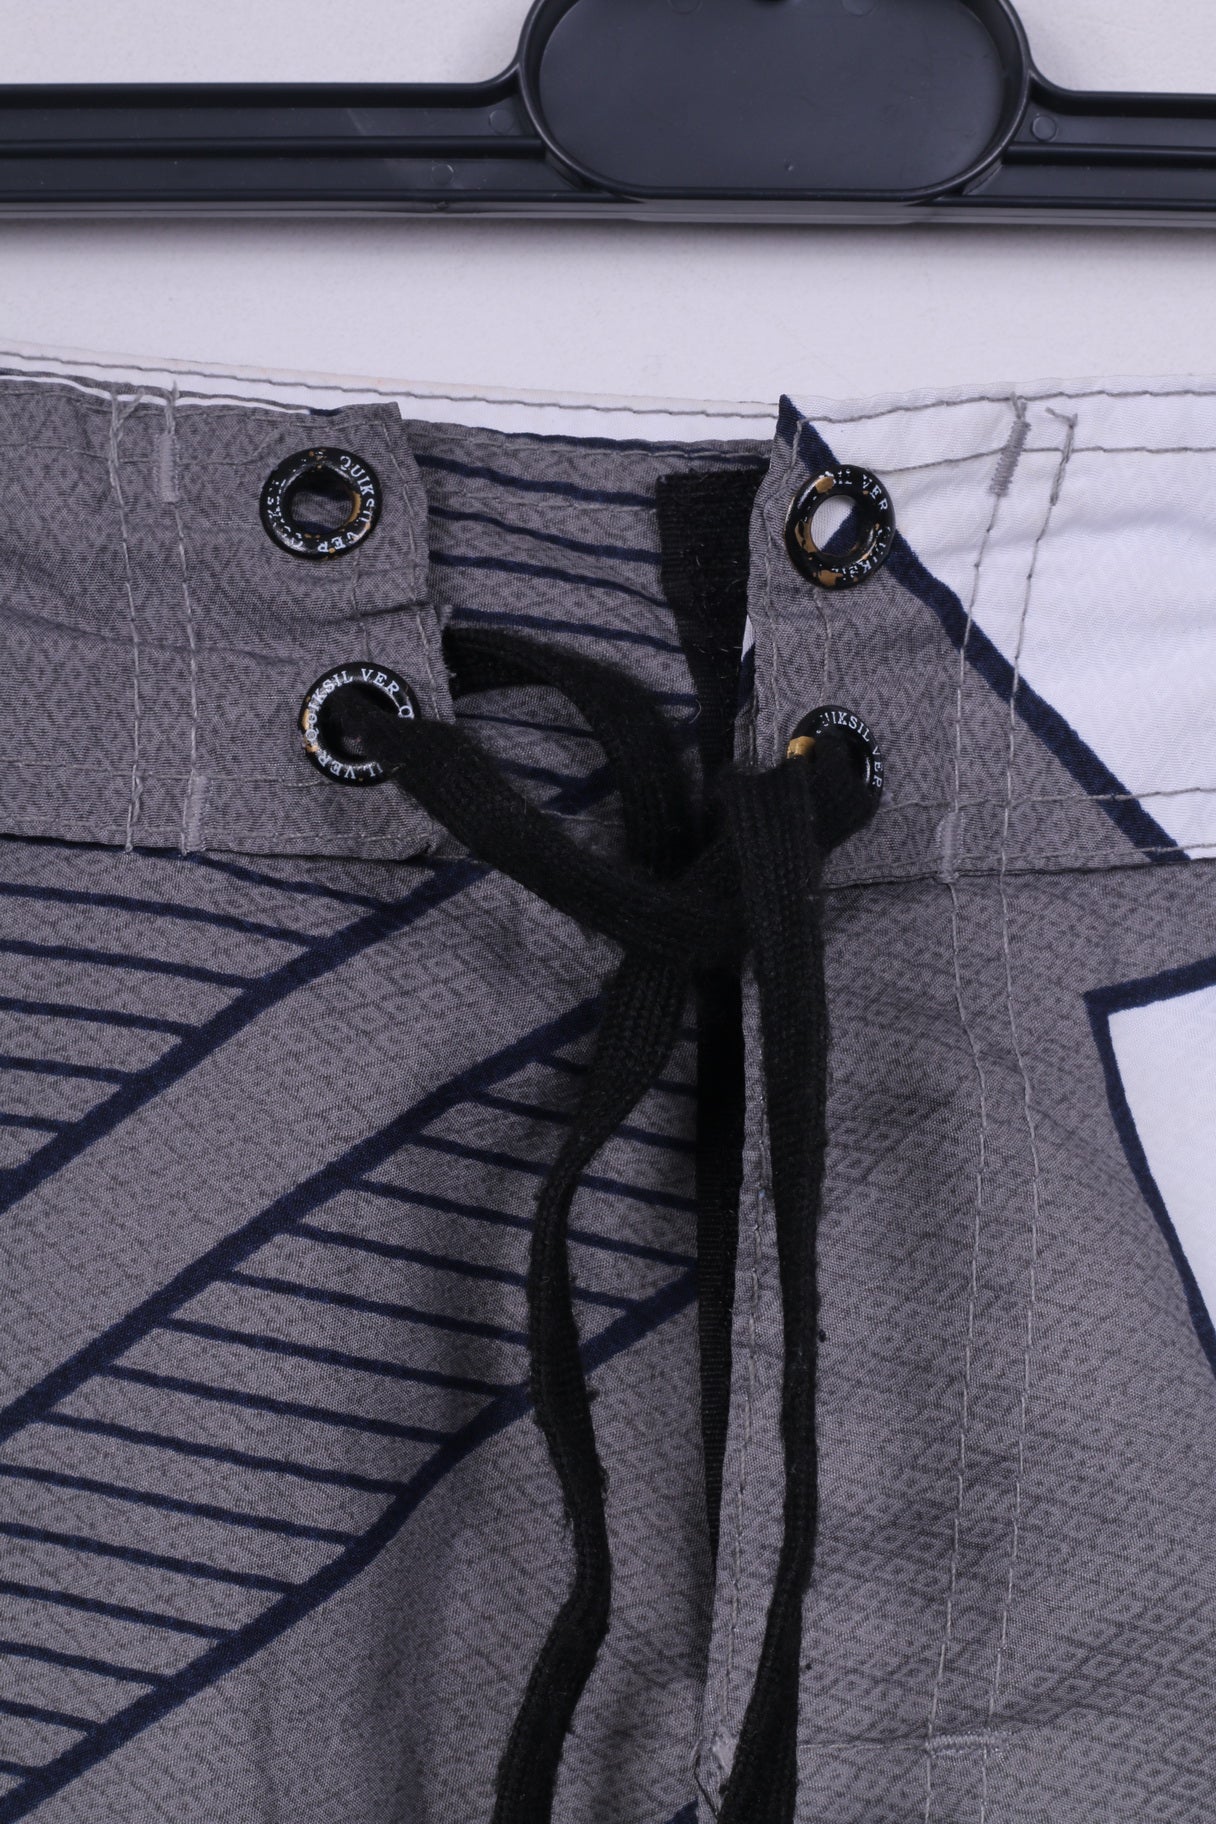 Quiksilver Mens 32 Shorts Swimpants Swimwear Grey Sportswear